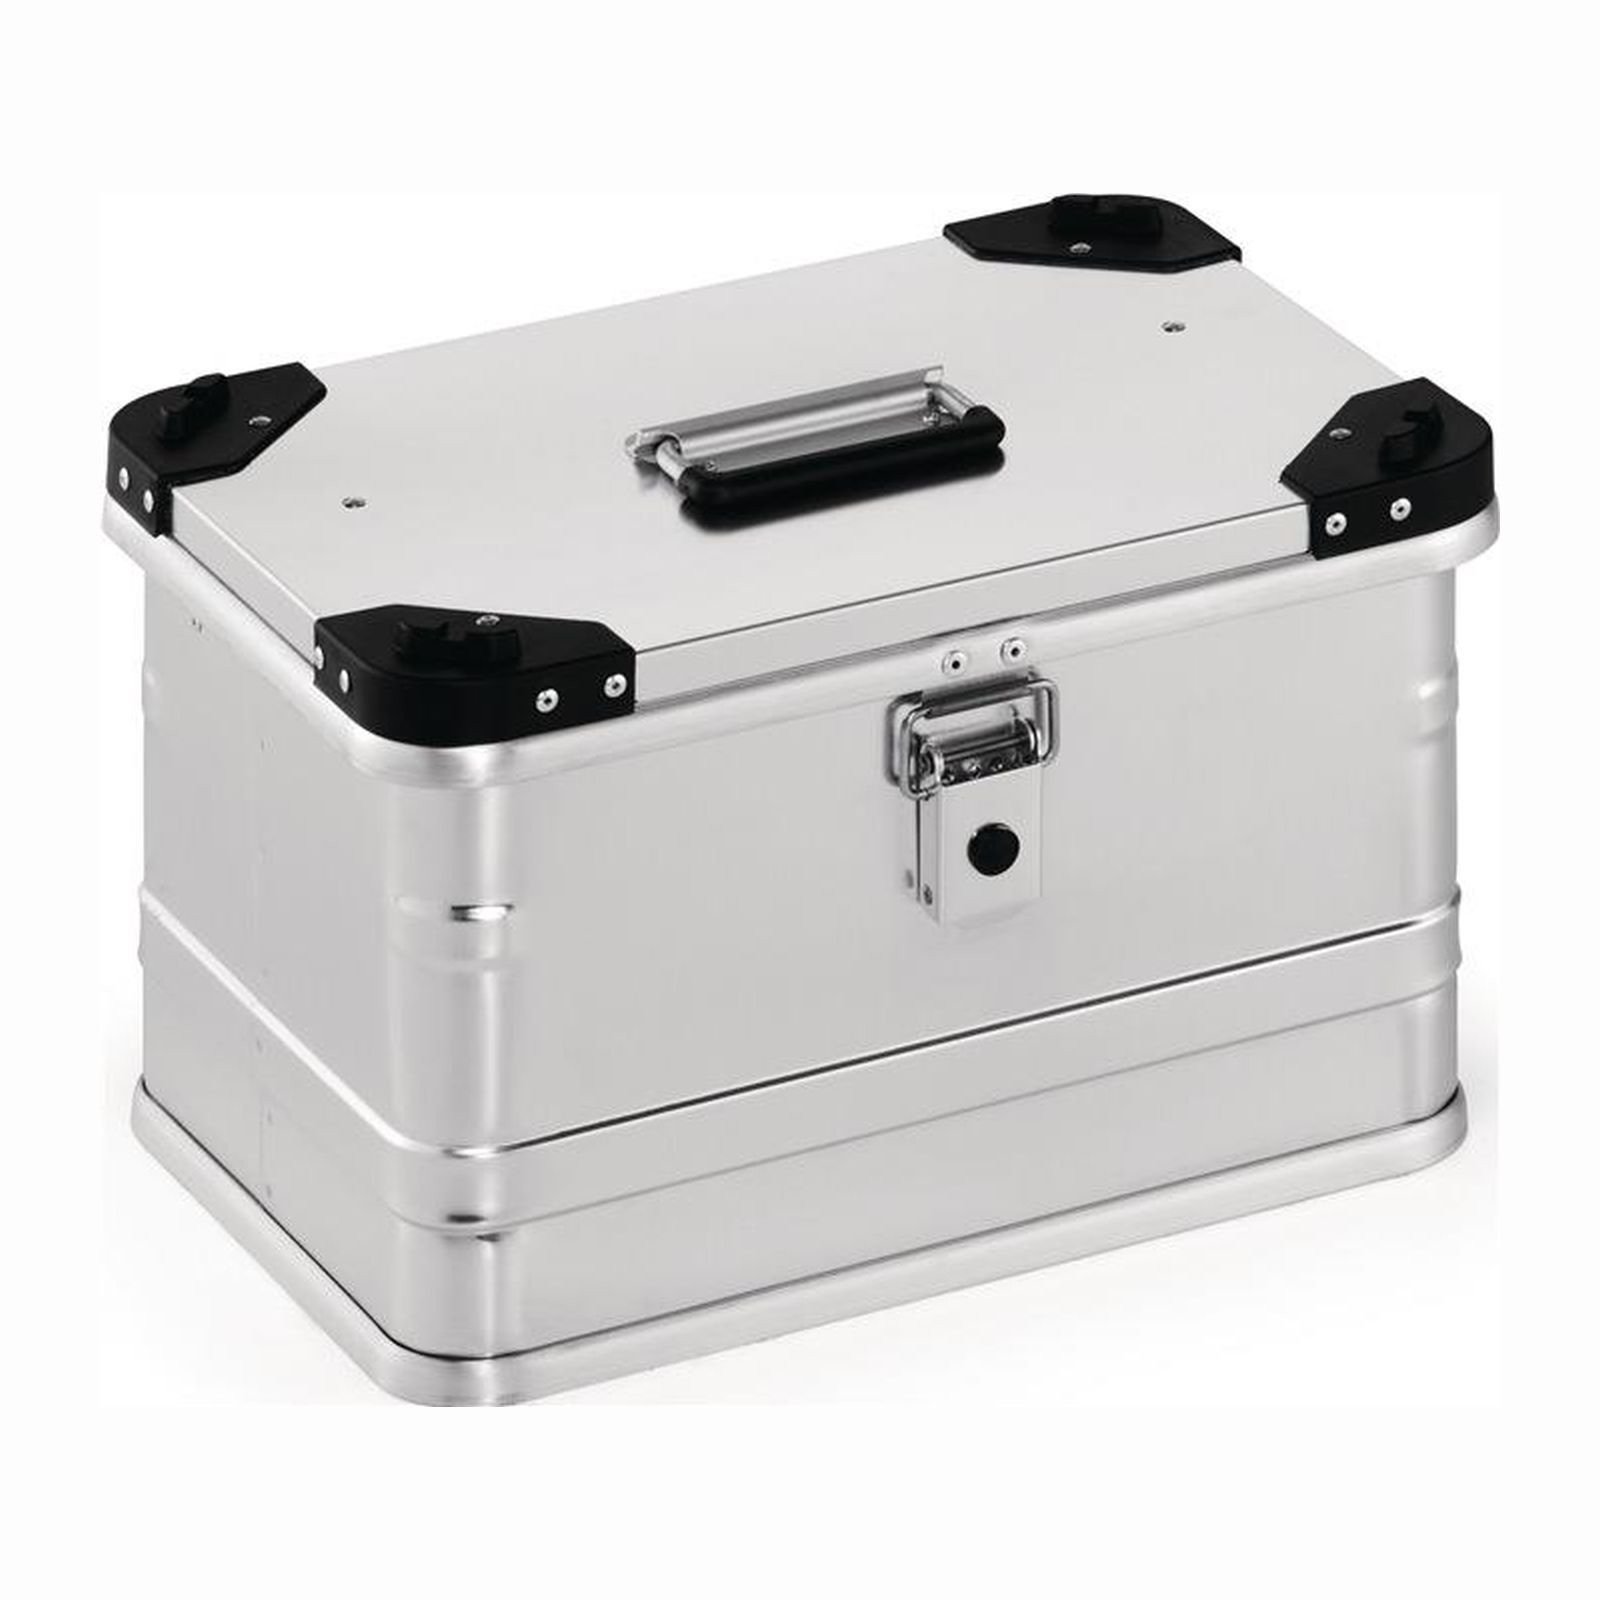 Aluminiumbox mit Klappverschluss und Stapelecken